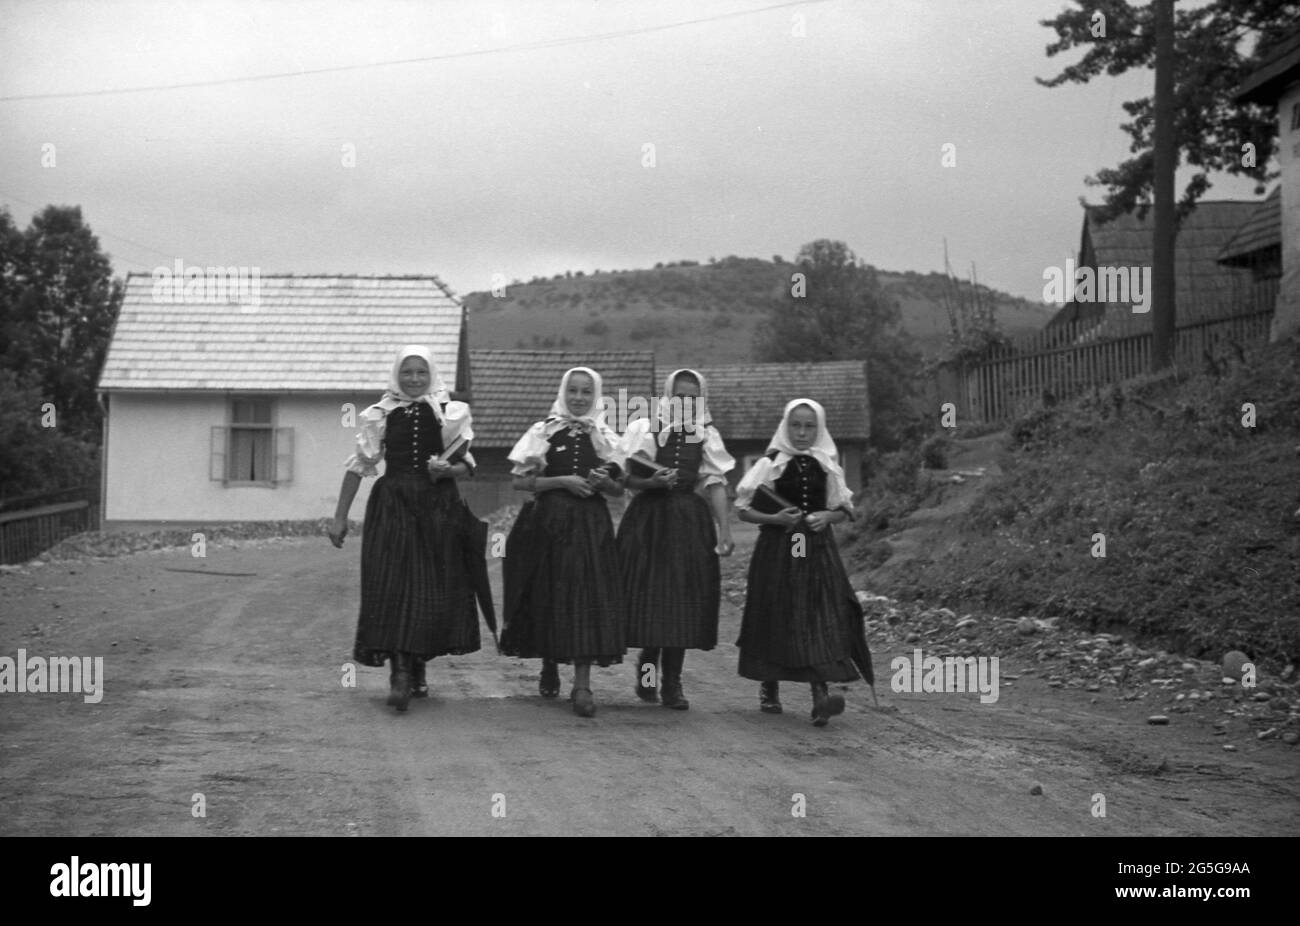 1930s, historique, village de Bohême, quatre écolières tchèques en costume traditionnel marchant le long d'une route de village rural. Cette région de la Tchécoslovaquie était connue et surnommée à cette époque les Sudètes, nom historique du peuple allemand des sudètes vivant dans les pays de Bohême occidentale et d'autres régions frontalières. Banque D'Images